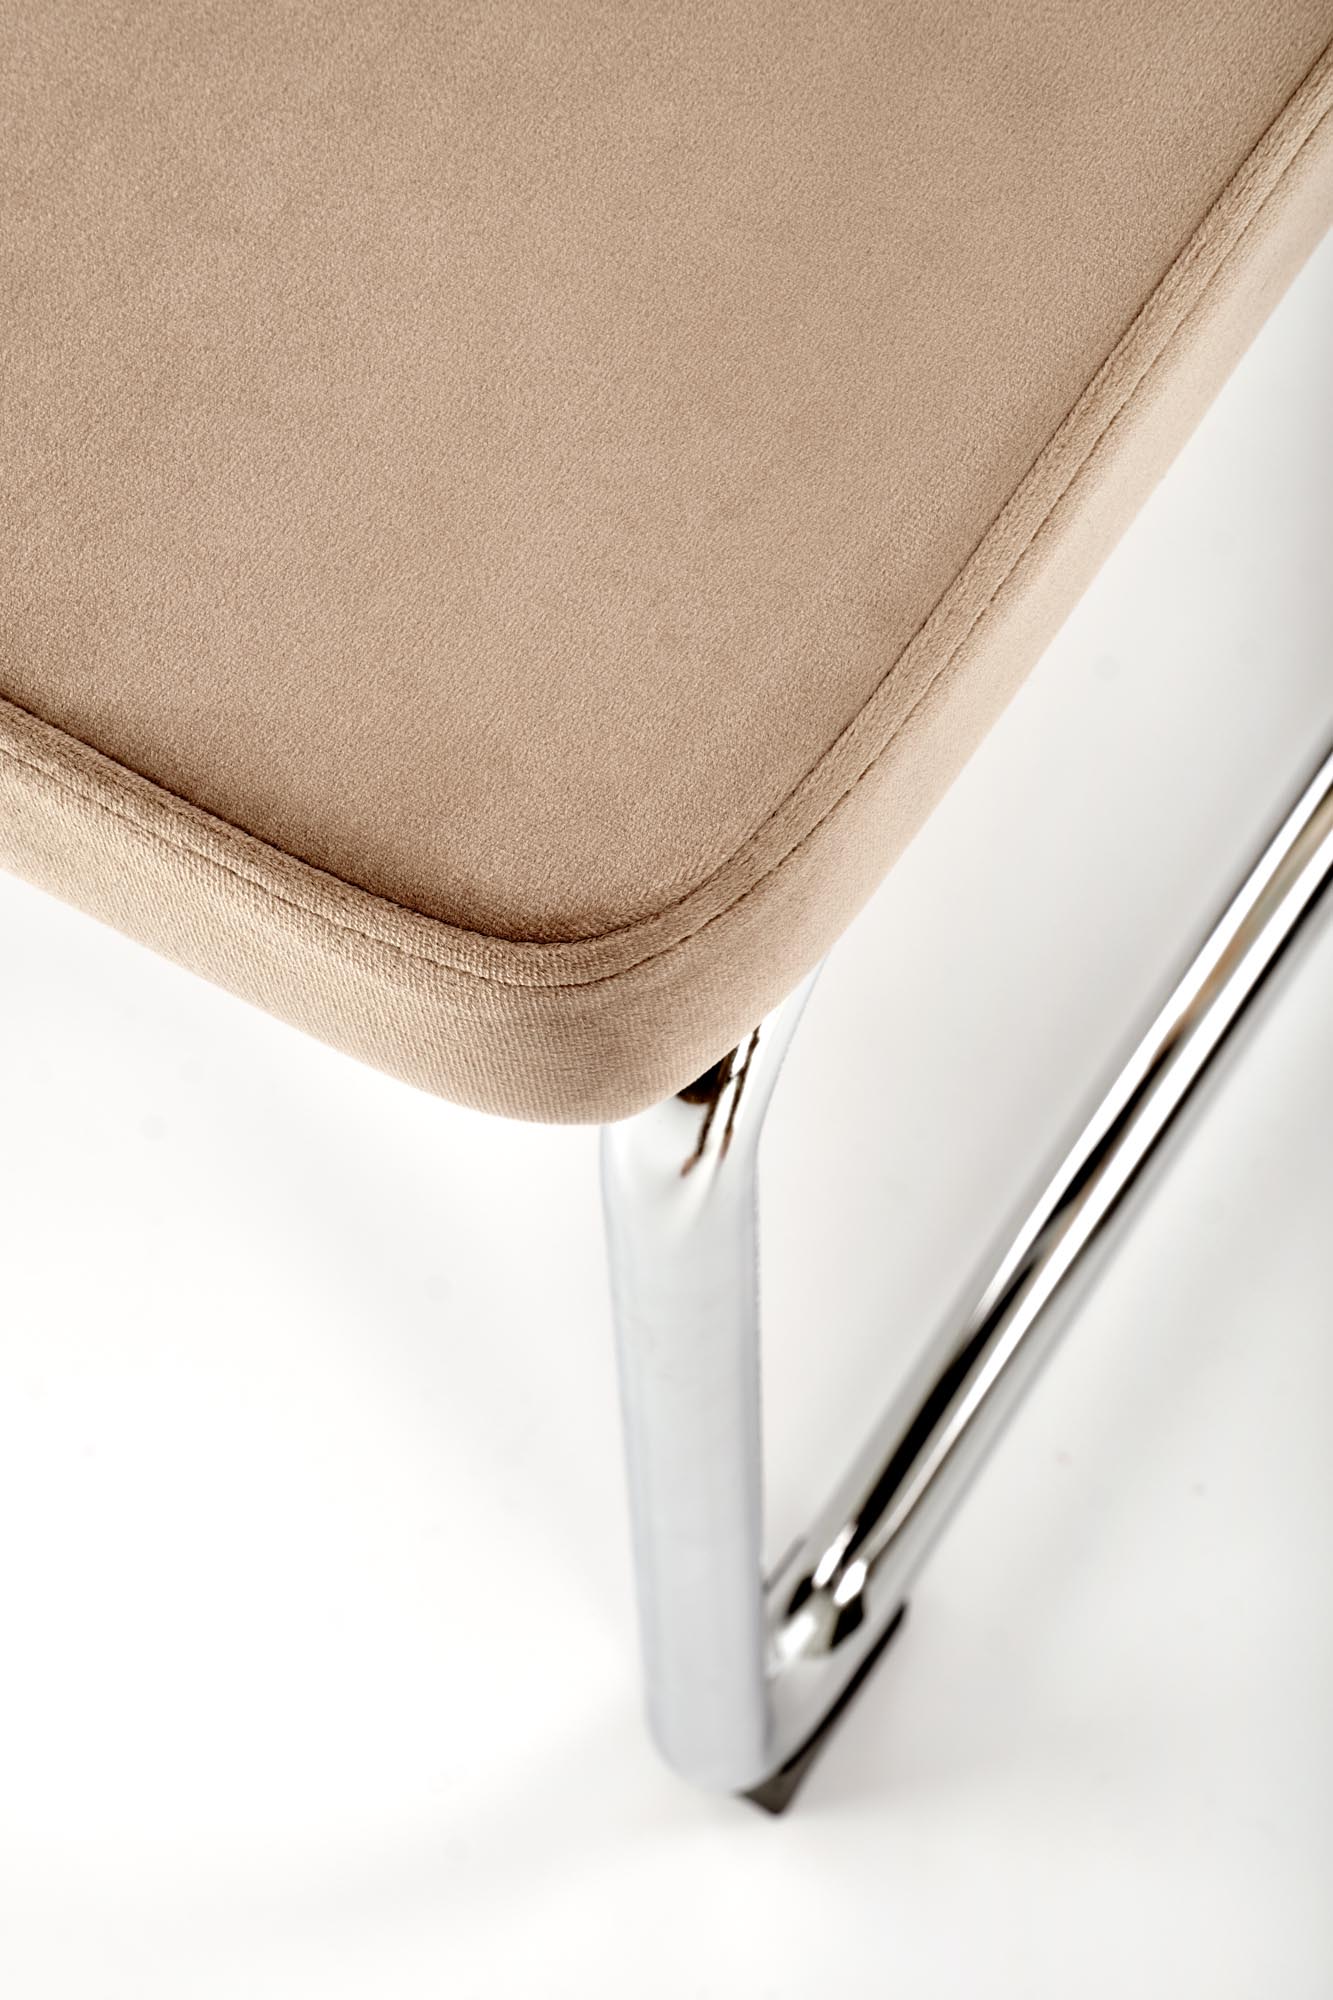 Krzesło metalowe z tapicerowanym siedziskiem K504 - beżowy / naturalny krzesło metalowe z tapicerowanym siedziskiem k504 - beżowy / naturalny